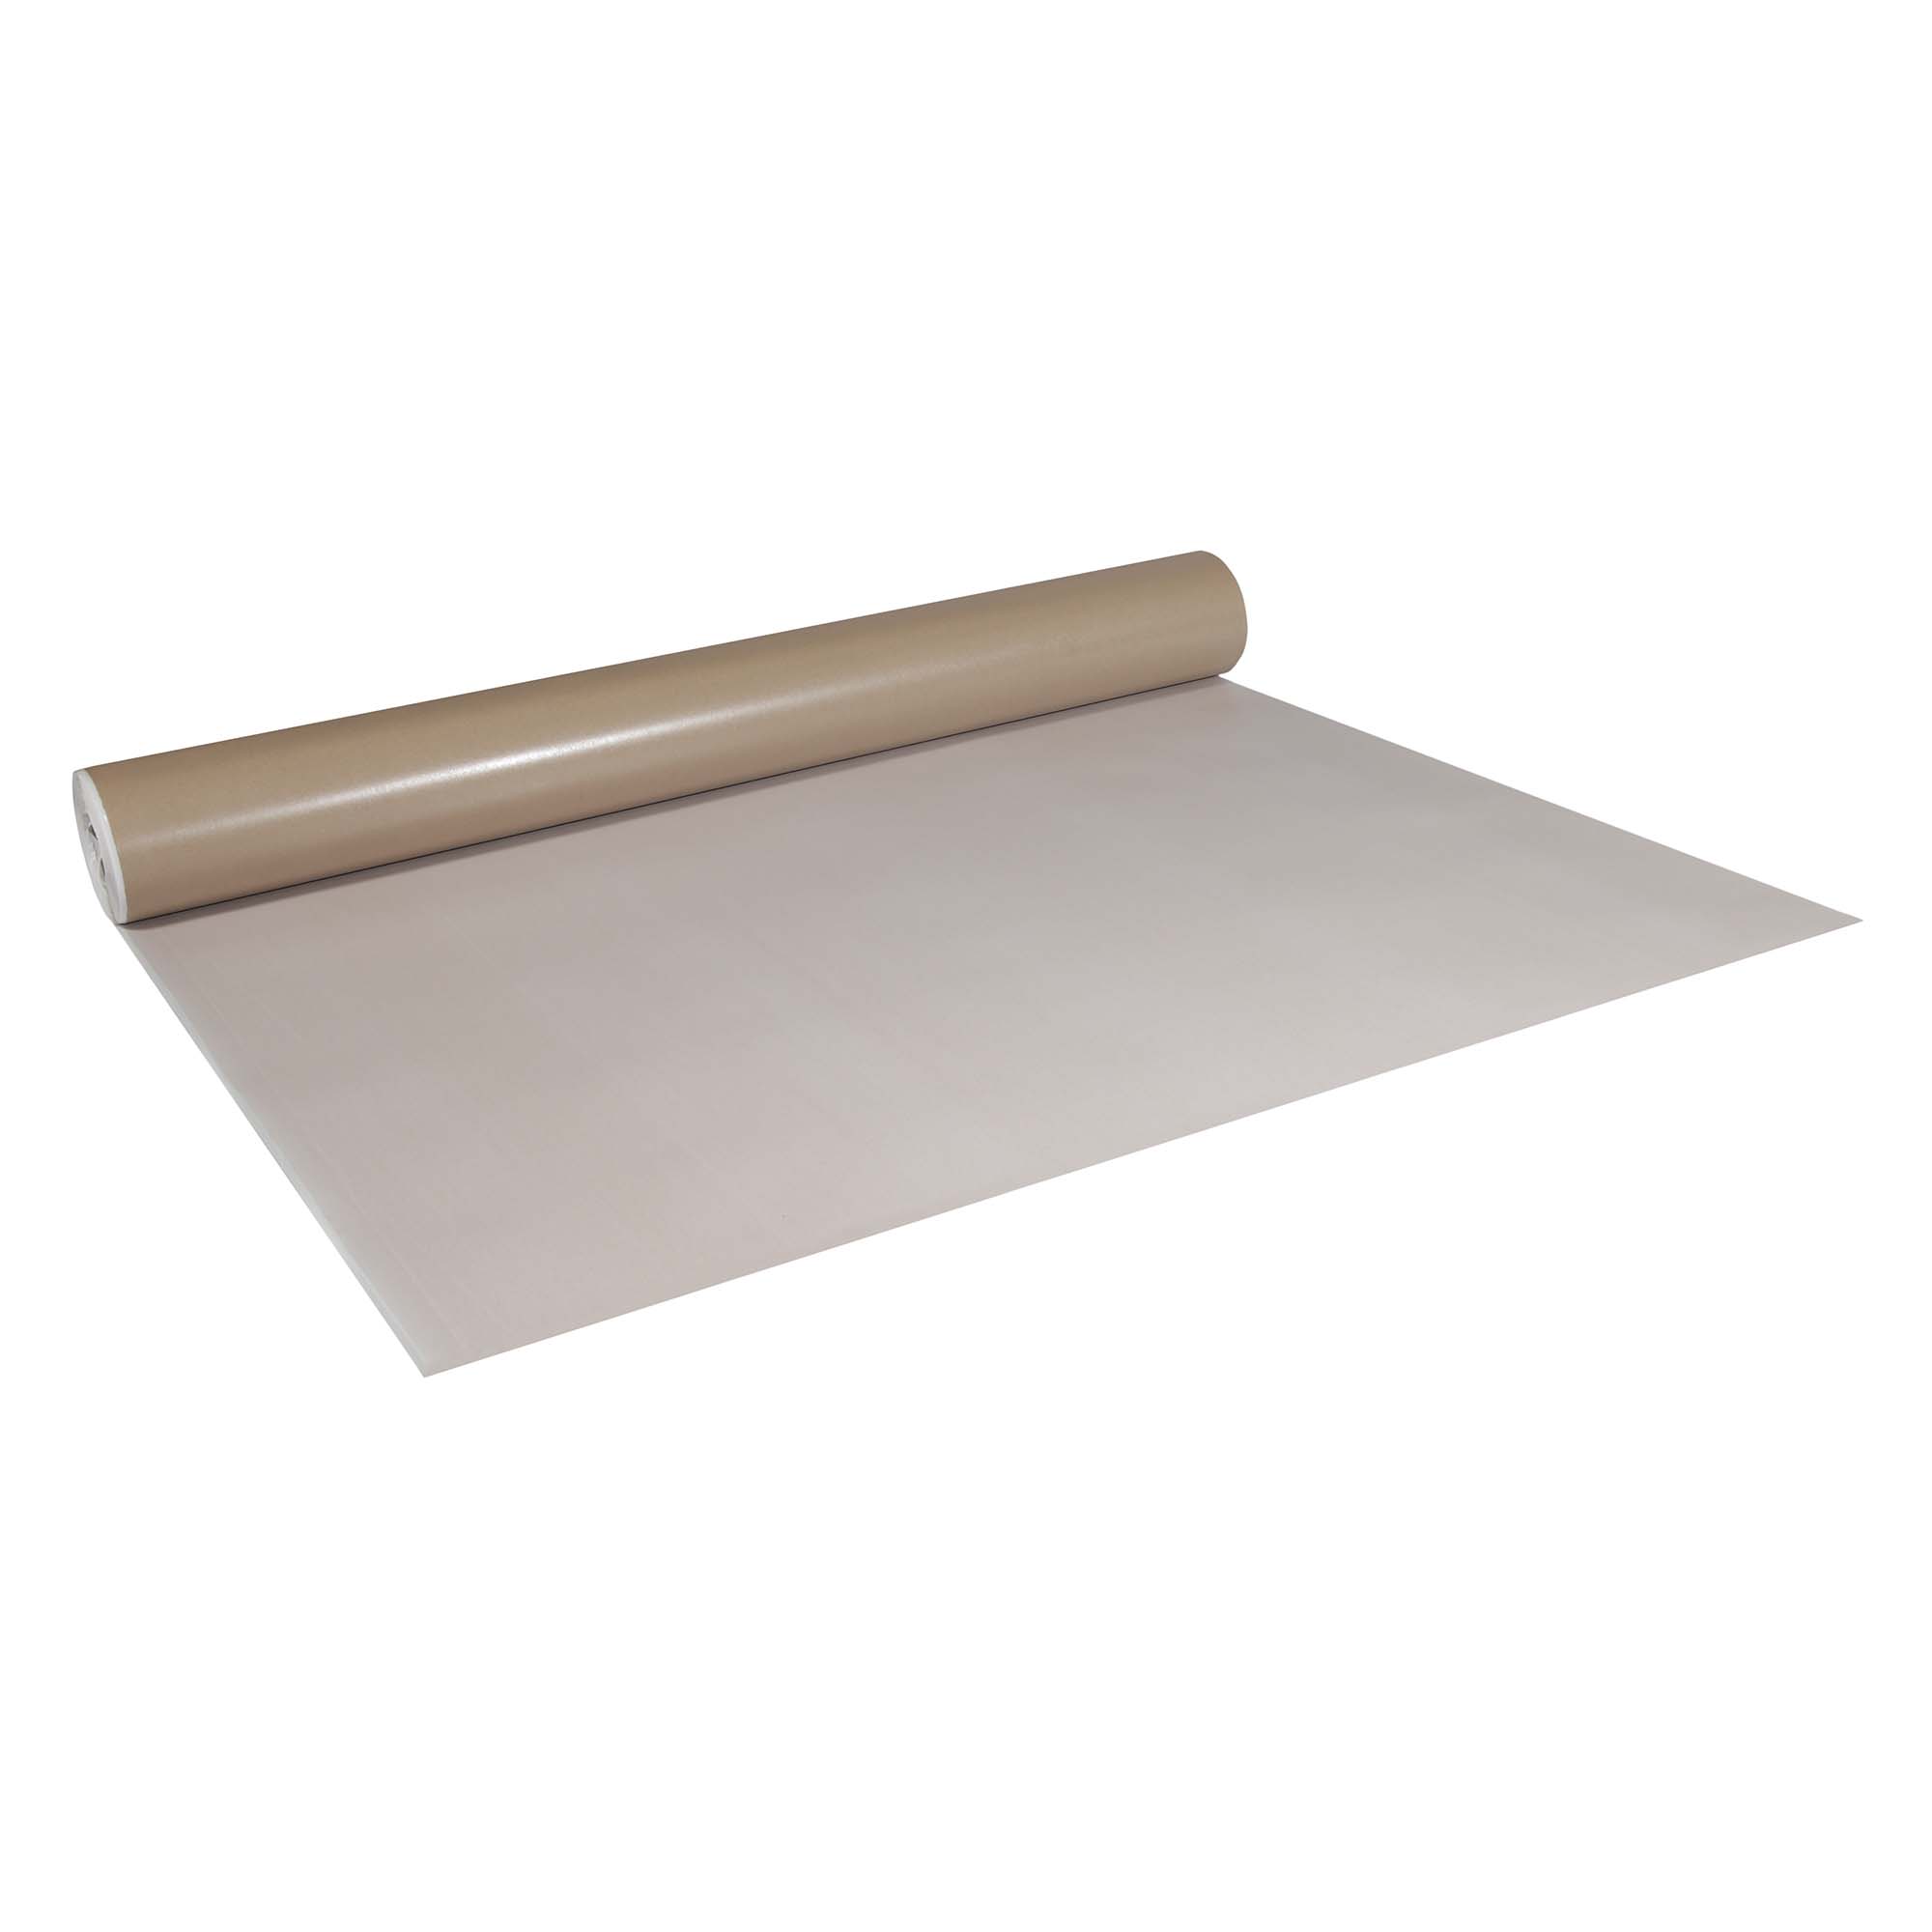 Abdeckpappe Milchtütenpapier weiß/braun 1,3 x 42 m beidseitig PE Folie beschichtet 250 g/m²